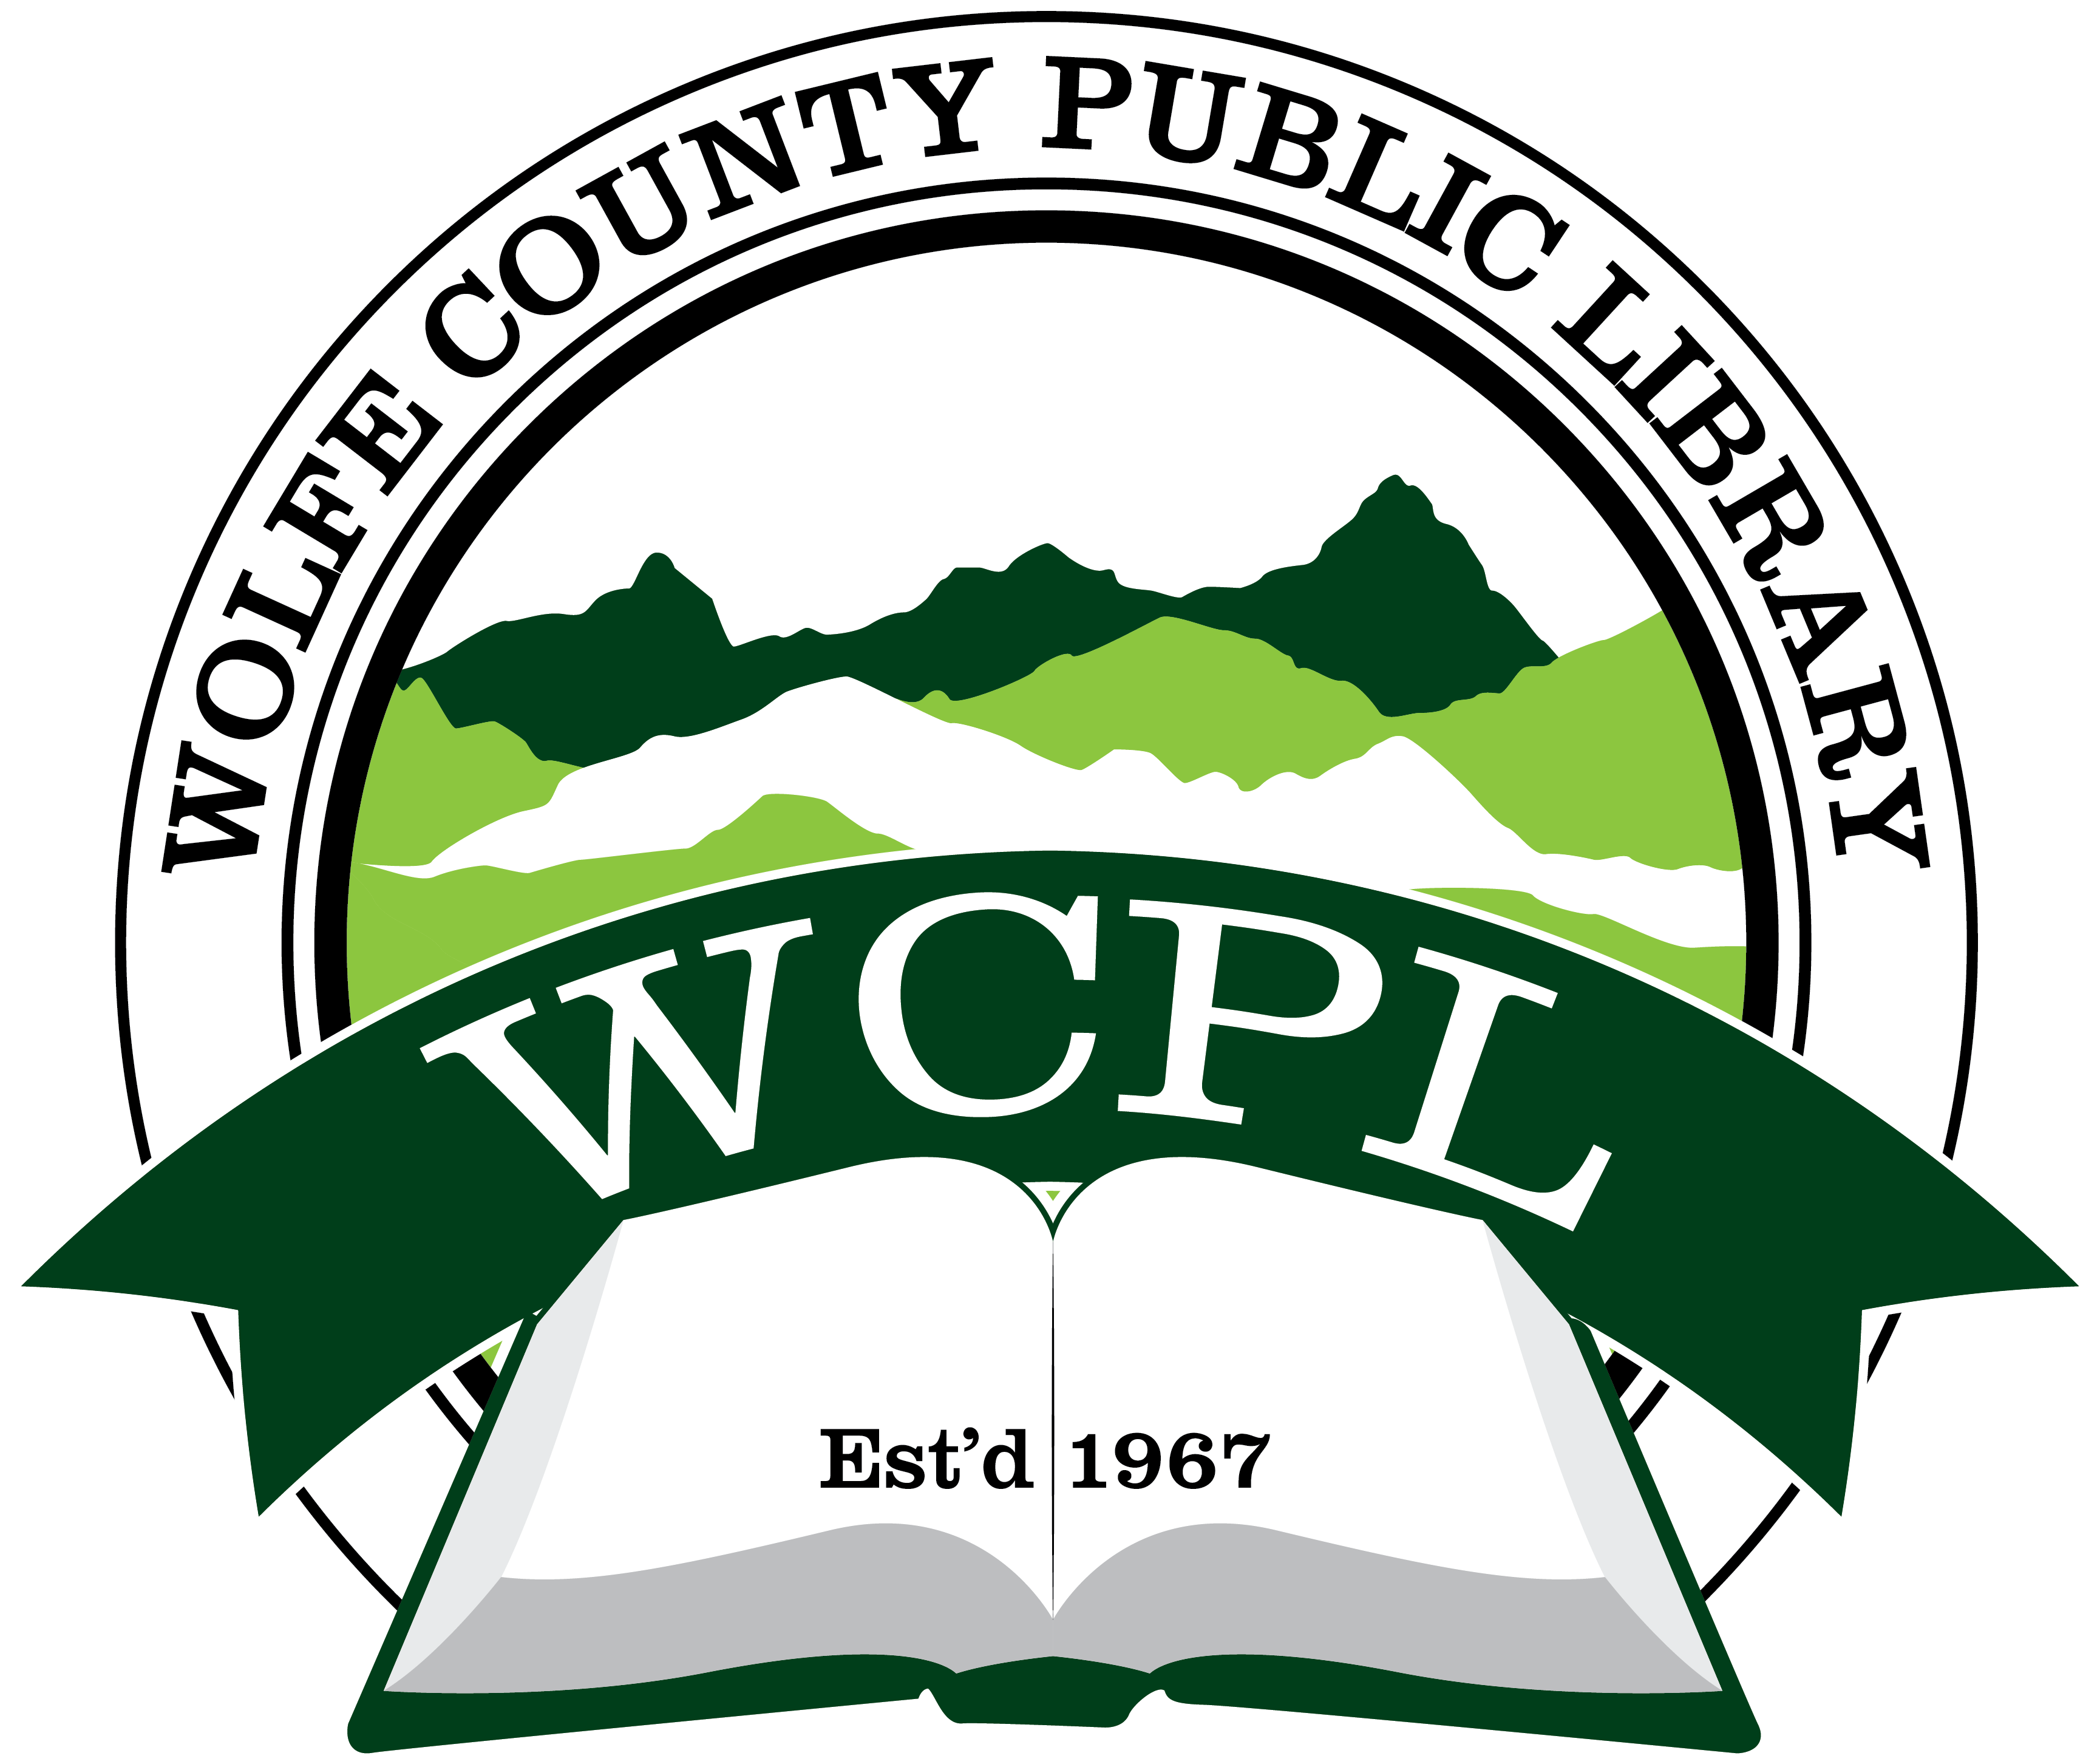 Libraray Logo - Library logo design for Wolfe County Public Library in Campton, Kentucky